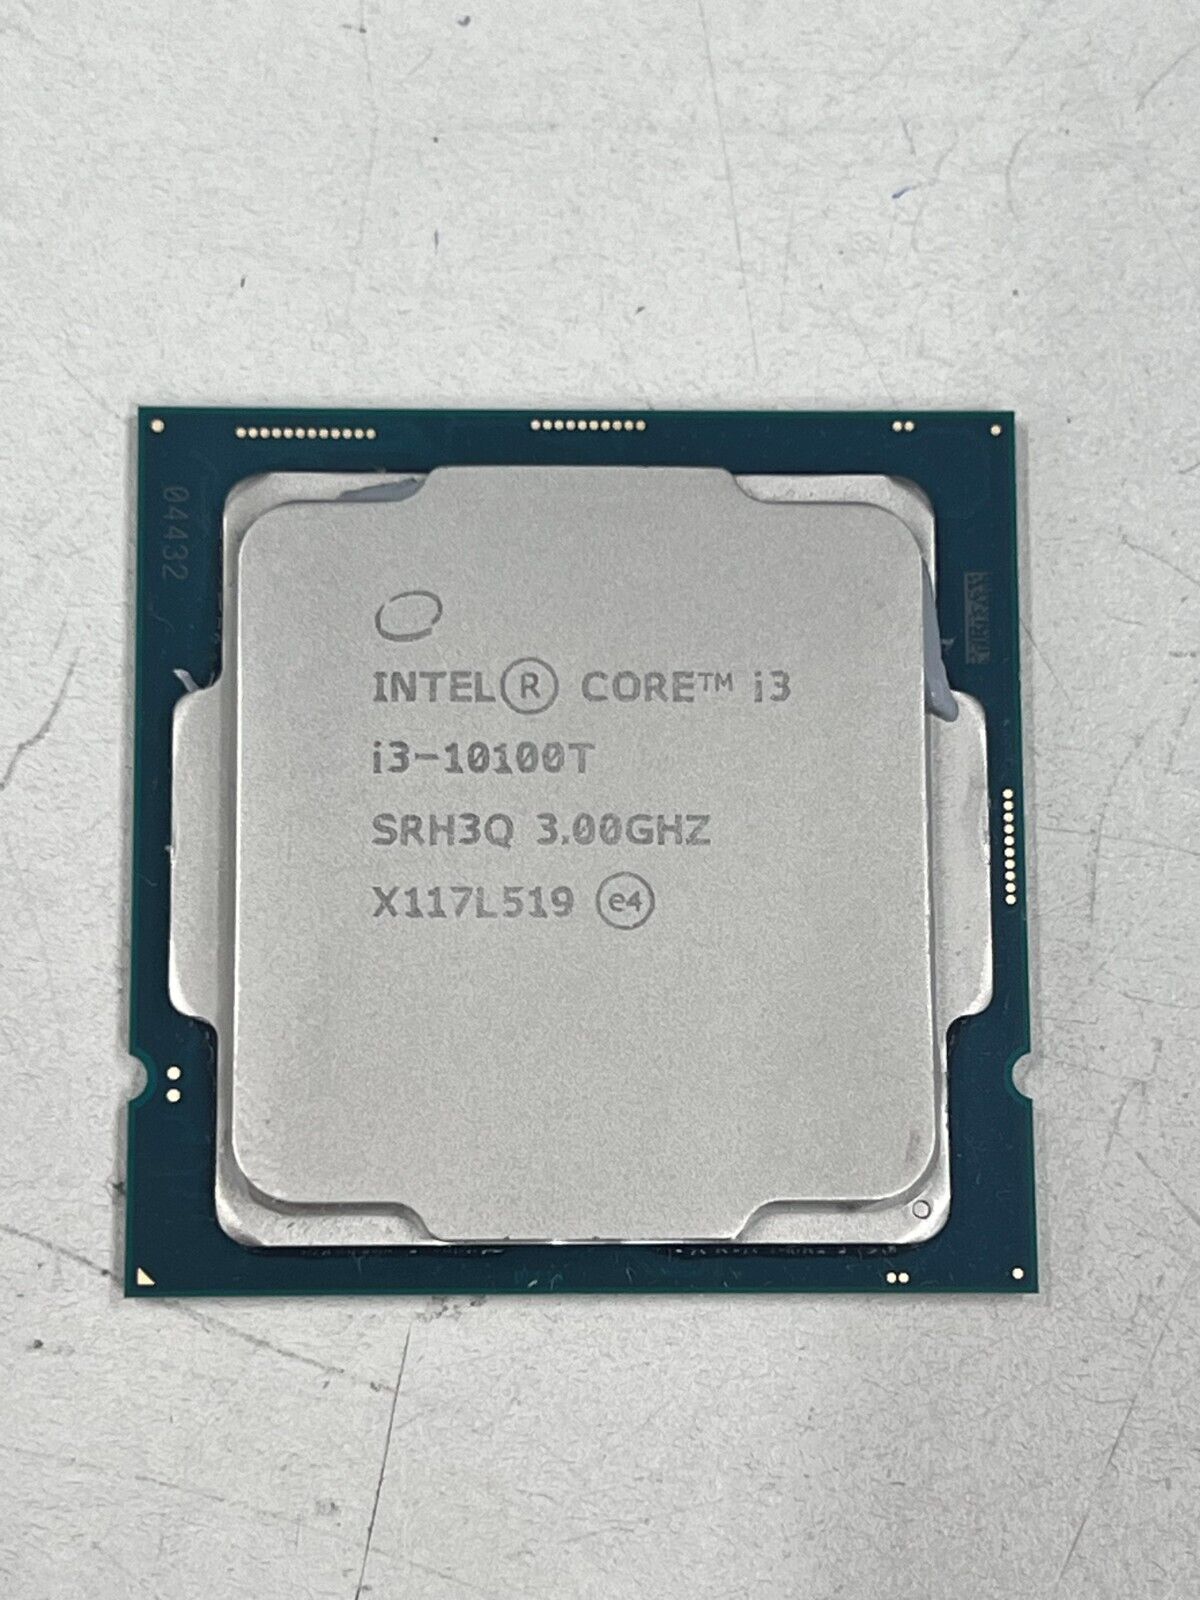 Intel Core i3-10100T SRH3Q 3.0GHz Quad-Core CPU Processor | TESTED